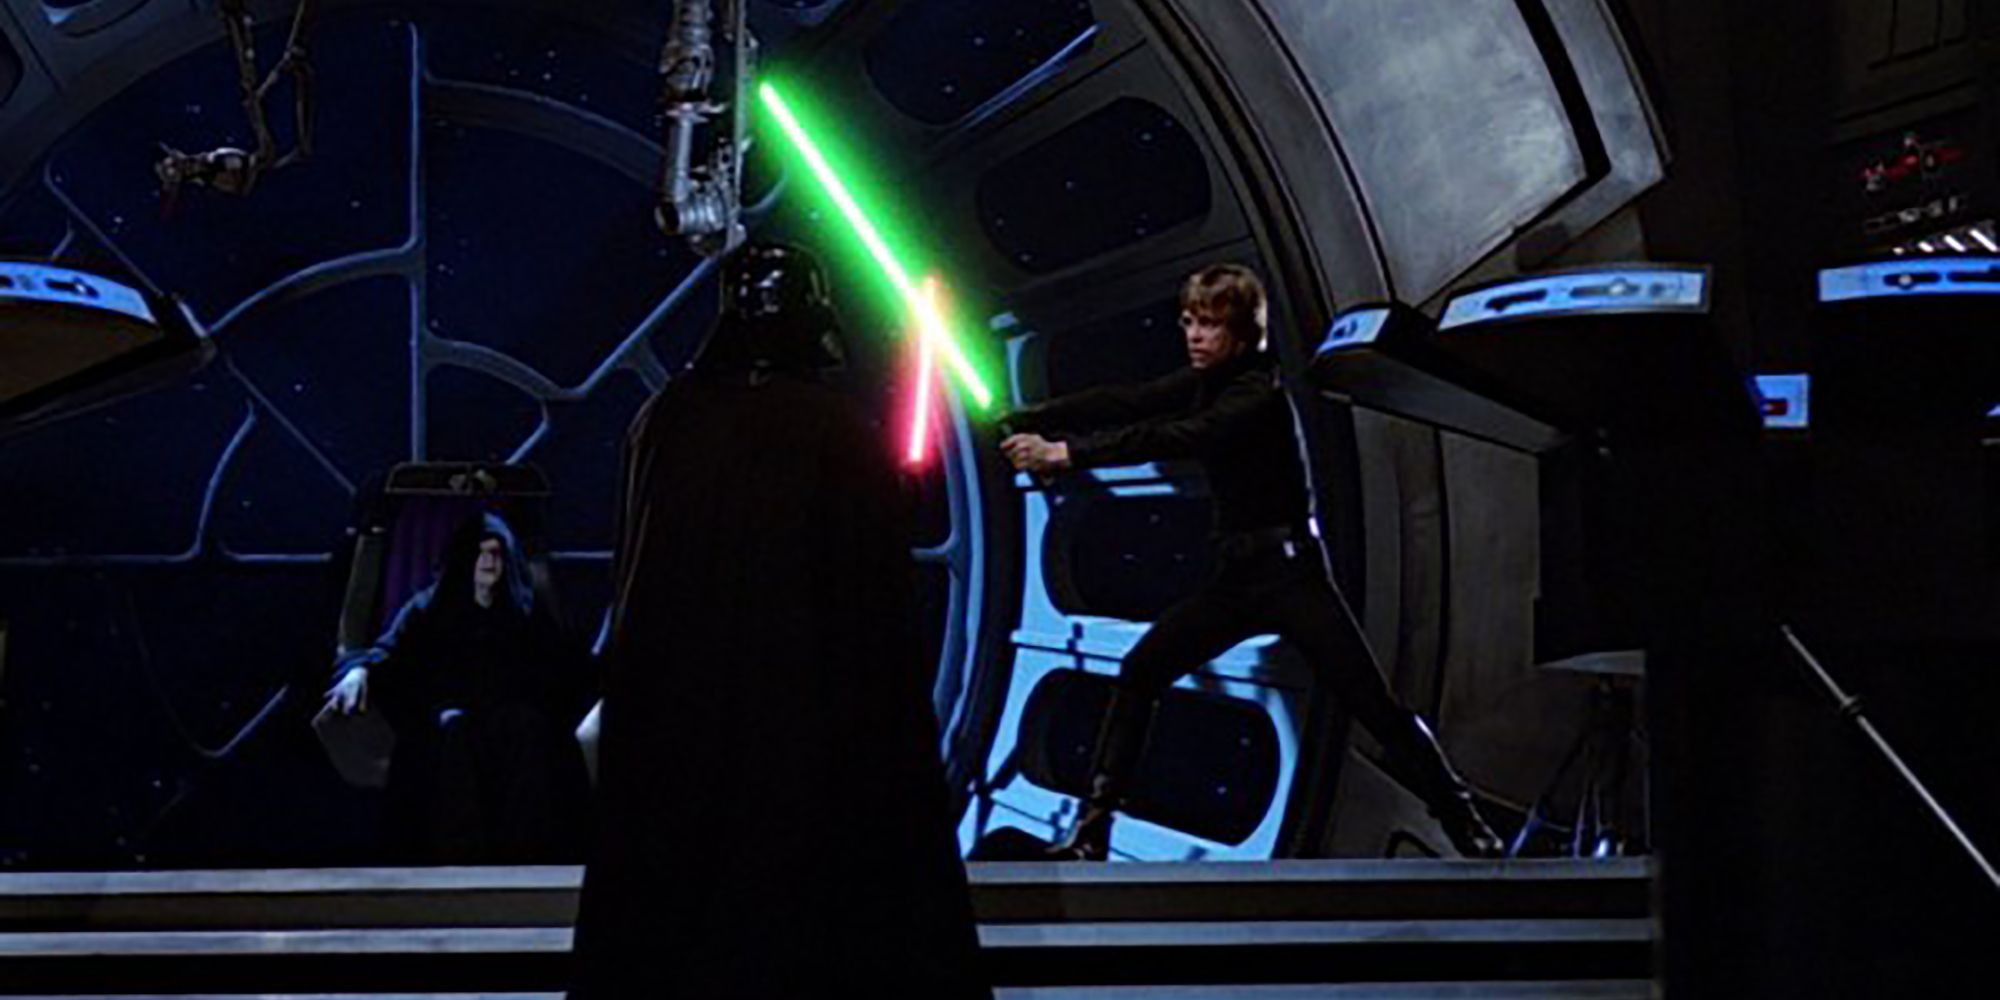 Luke Skywalker vs Darth Vader